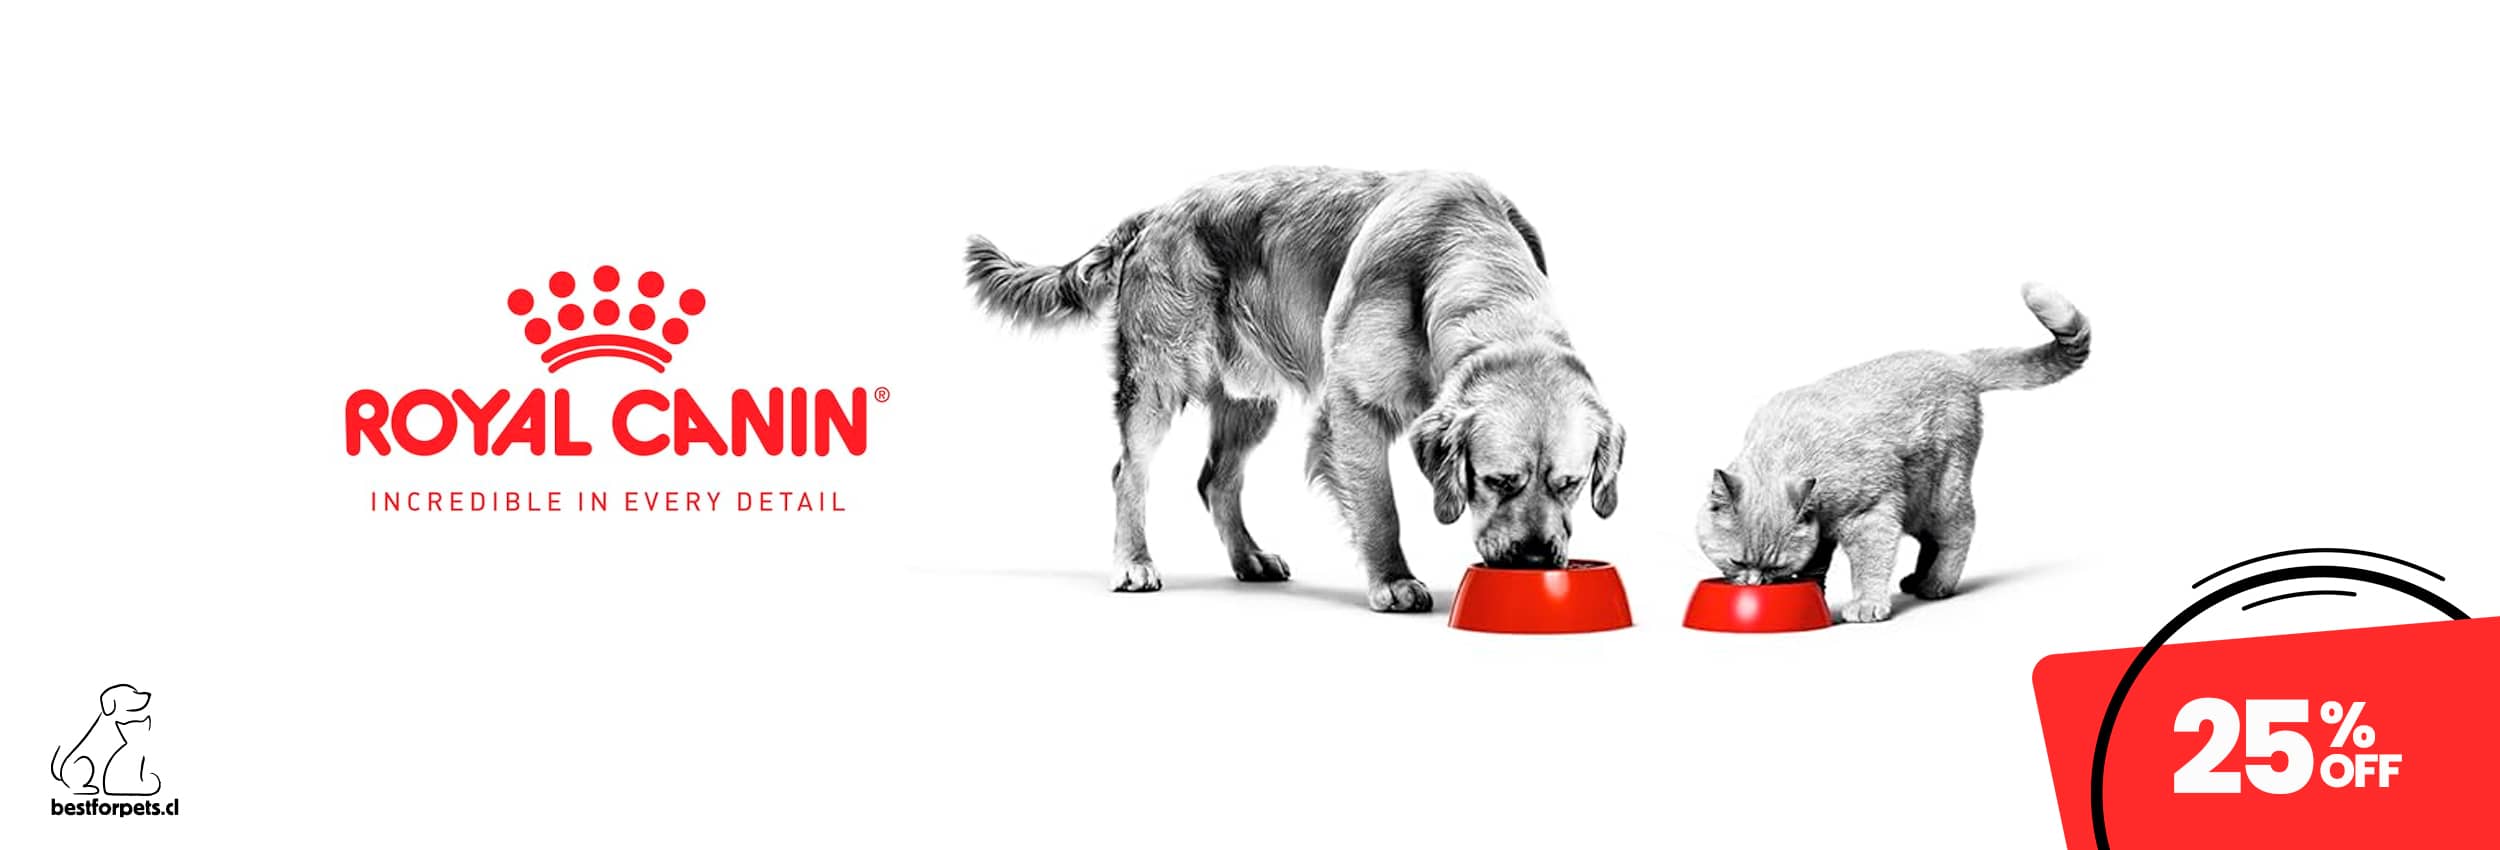 25% de descuento en alimentos Royal Canin | Best for Pets